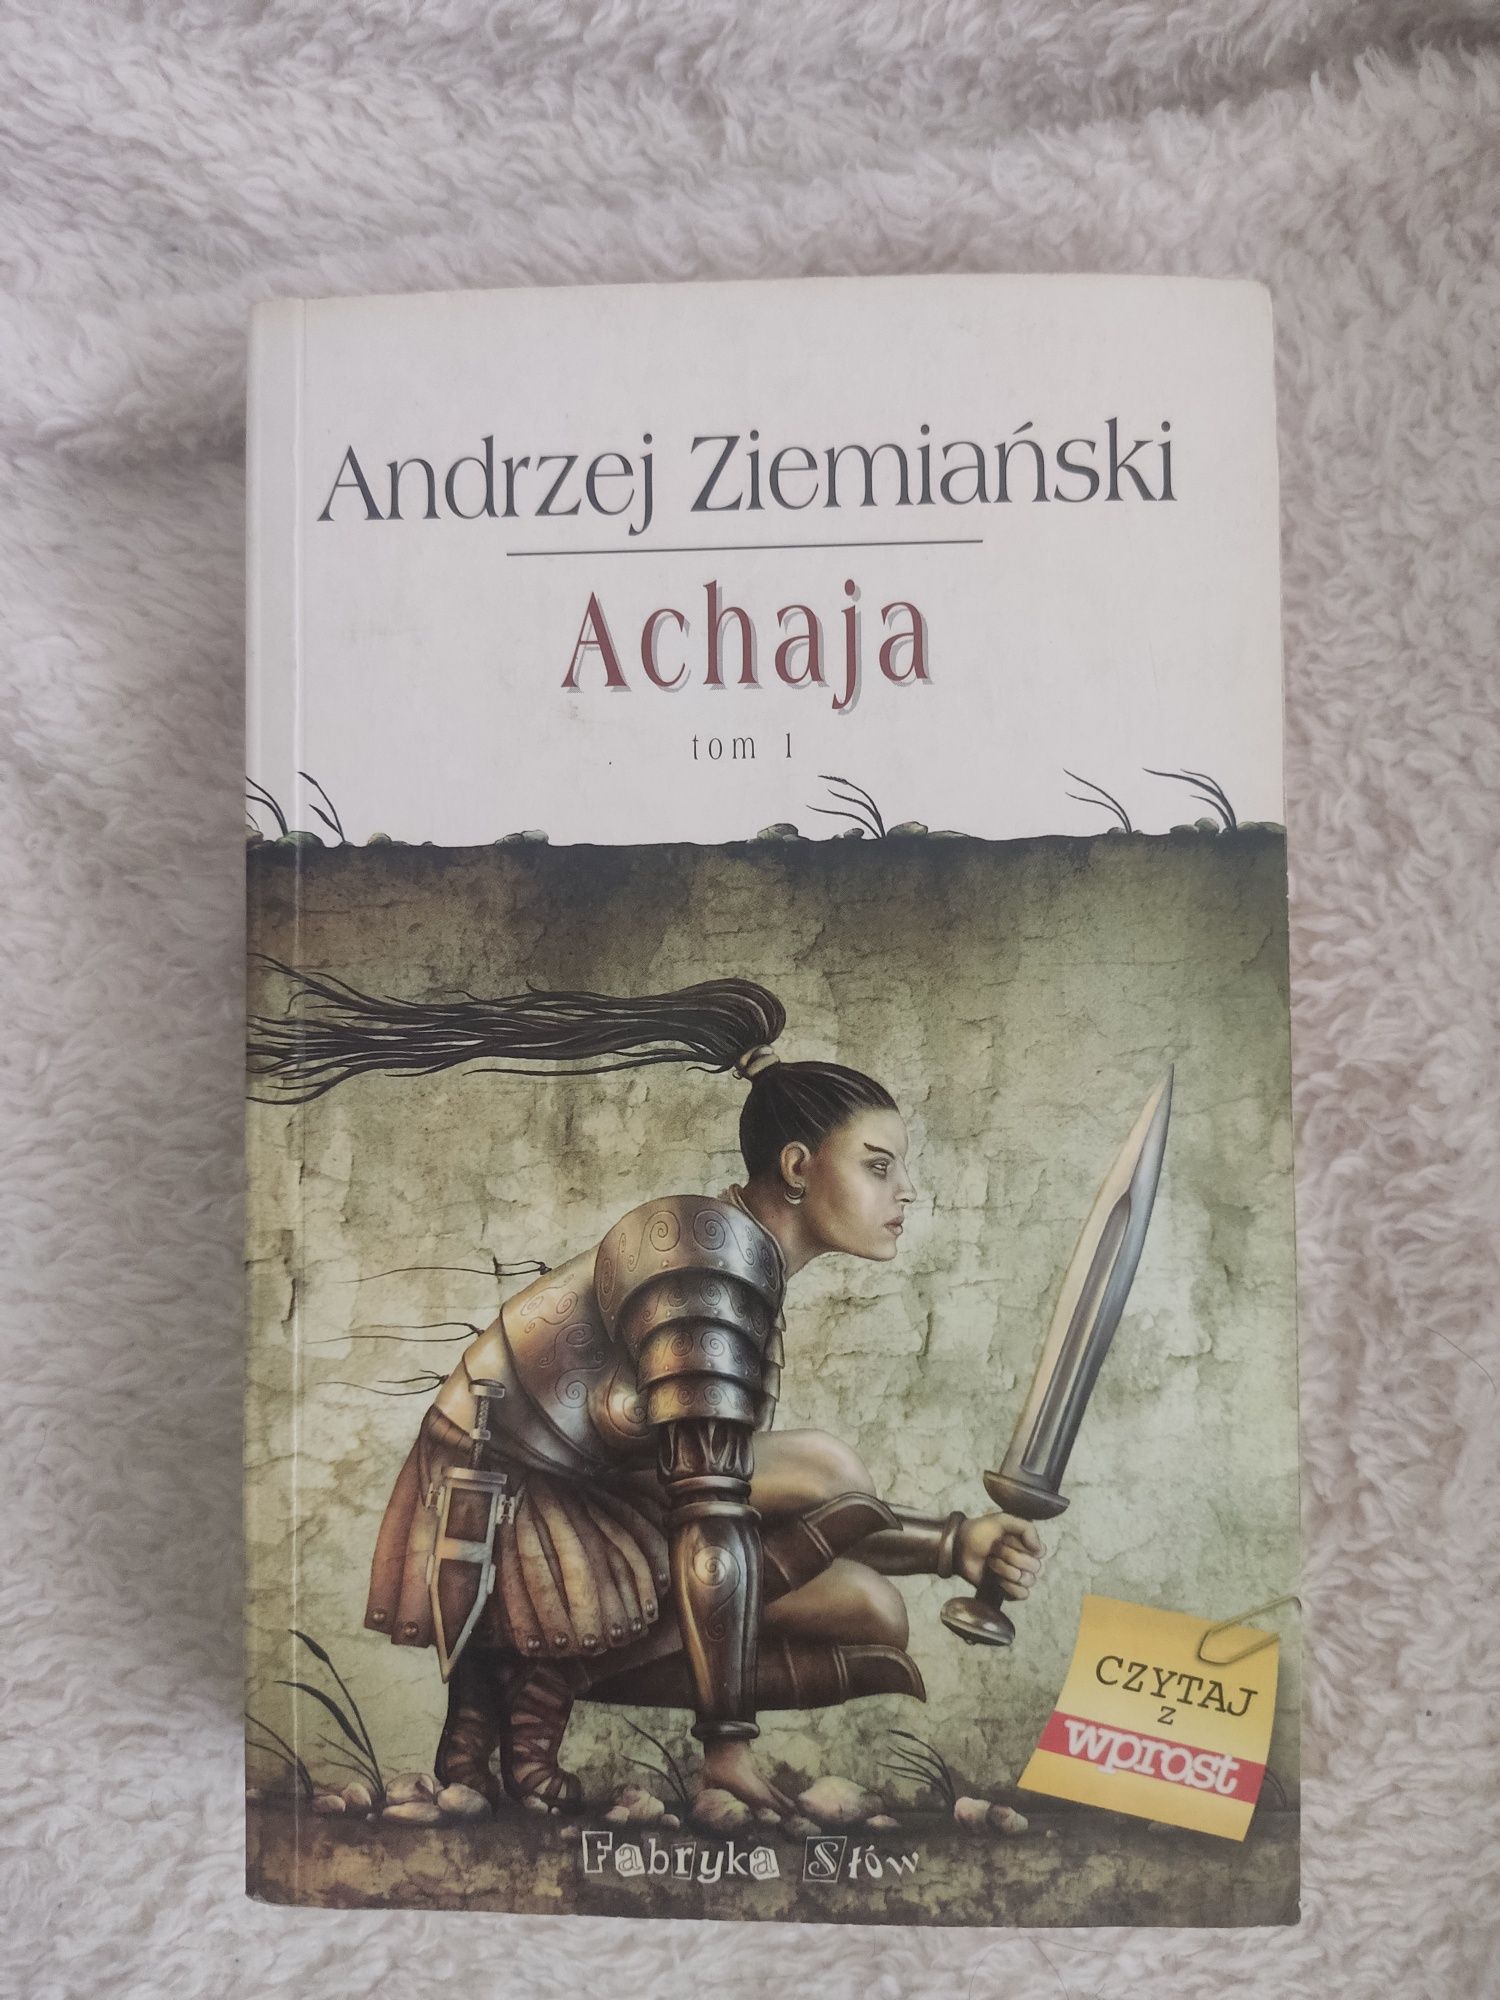 Achaja. Andrzej Ziemiański. Książka tom 1